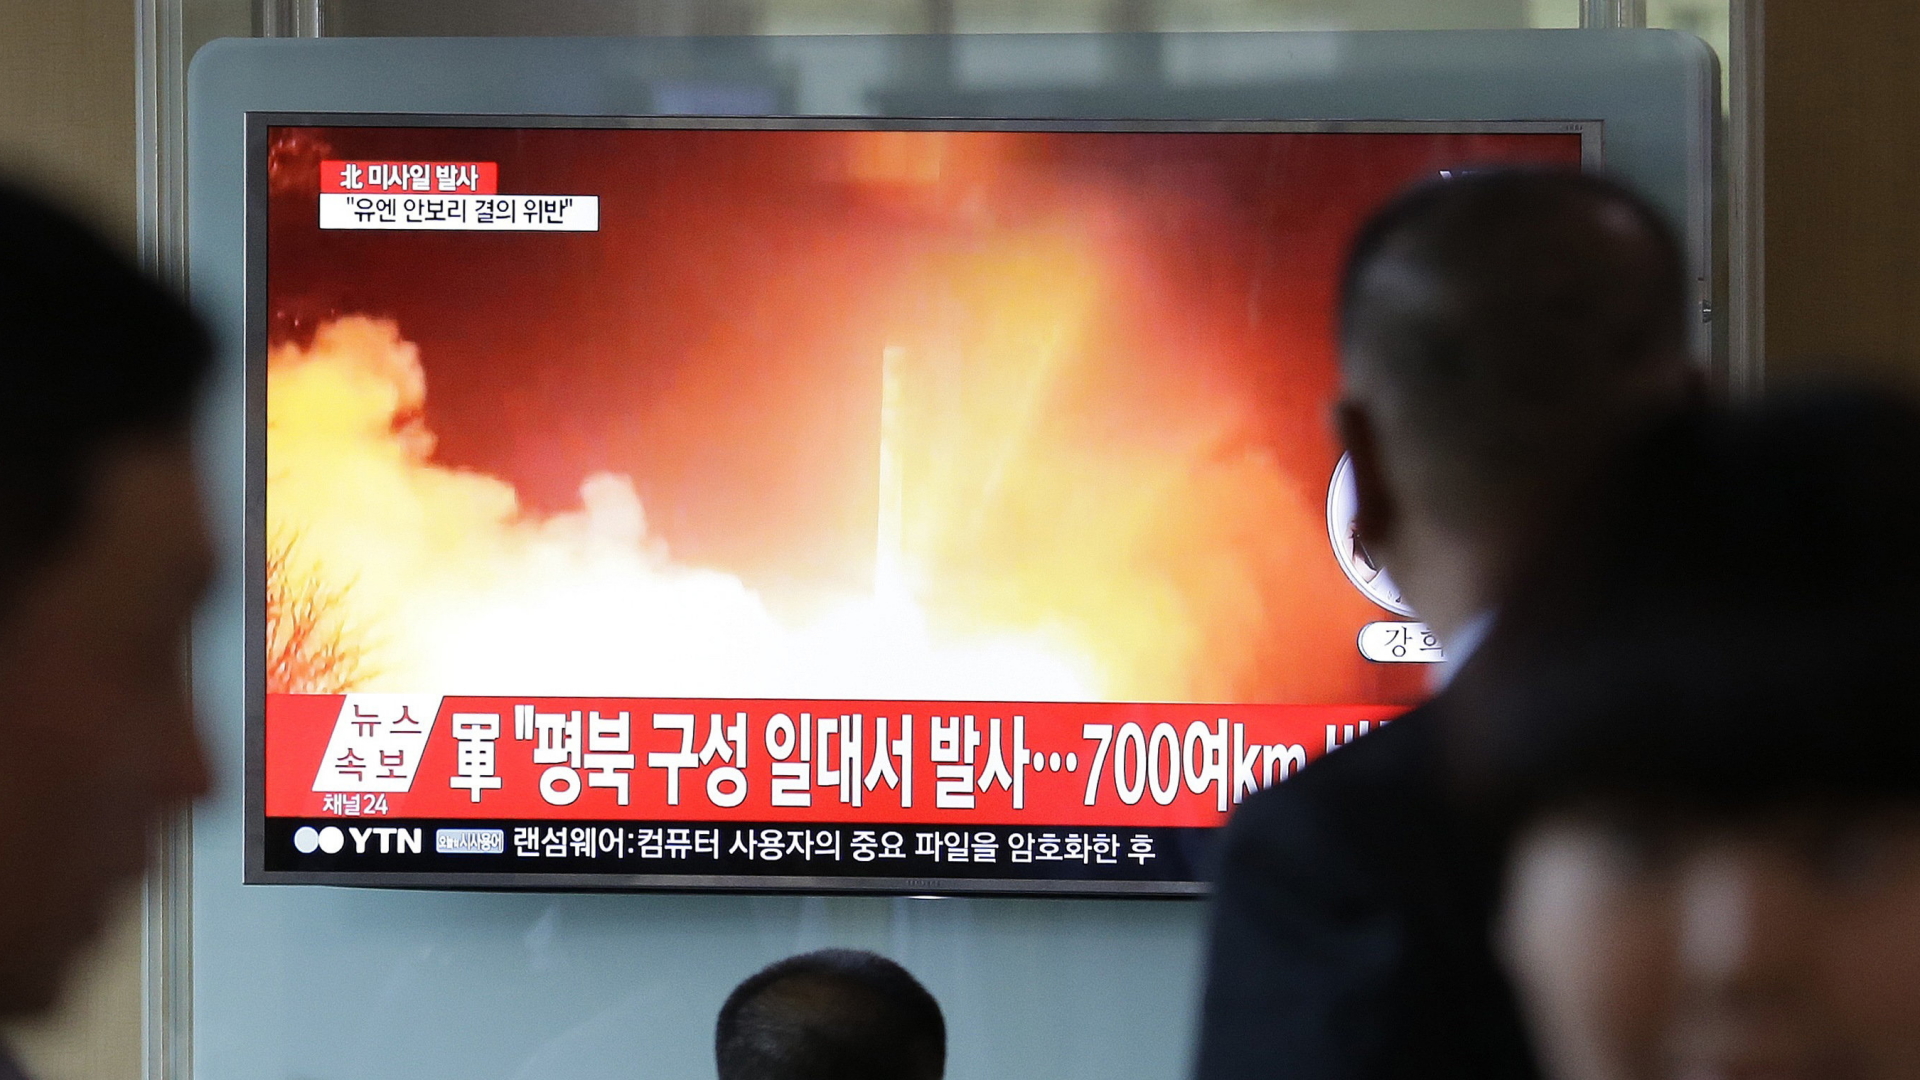 Menschen schauen am Bahnhof in Seoul in Südkorea auf einen TV-Bildschirm, auf dem eine Archivaufnahme von einem früheren nordkoreanischen Raketentest zu sehen ist.